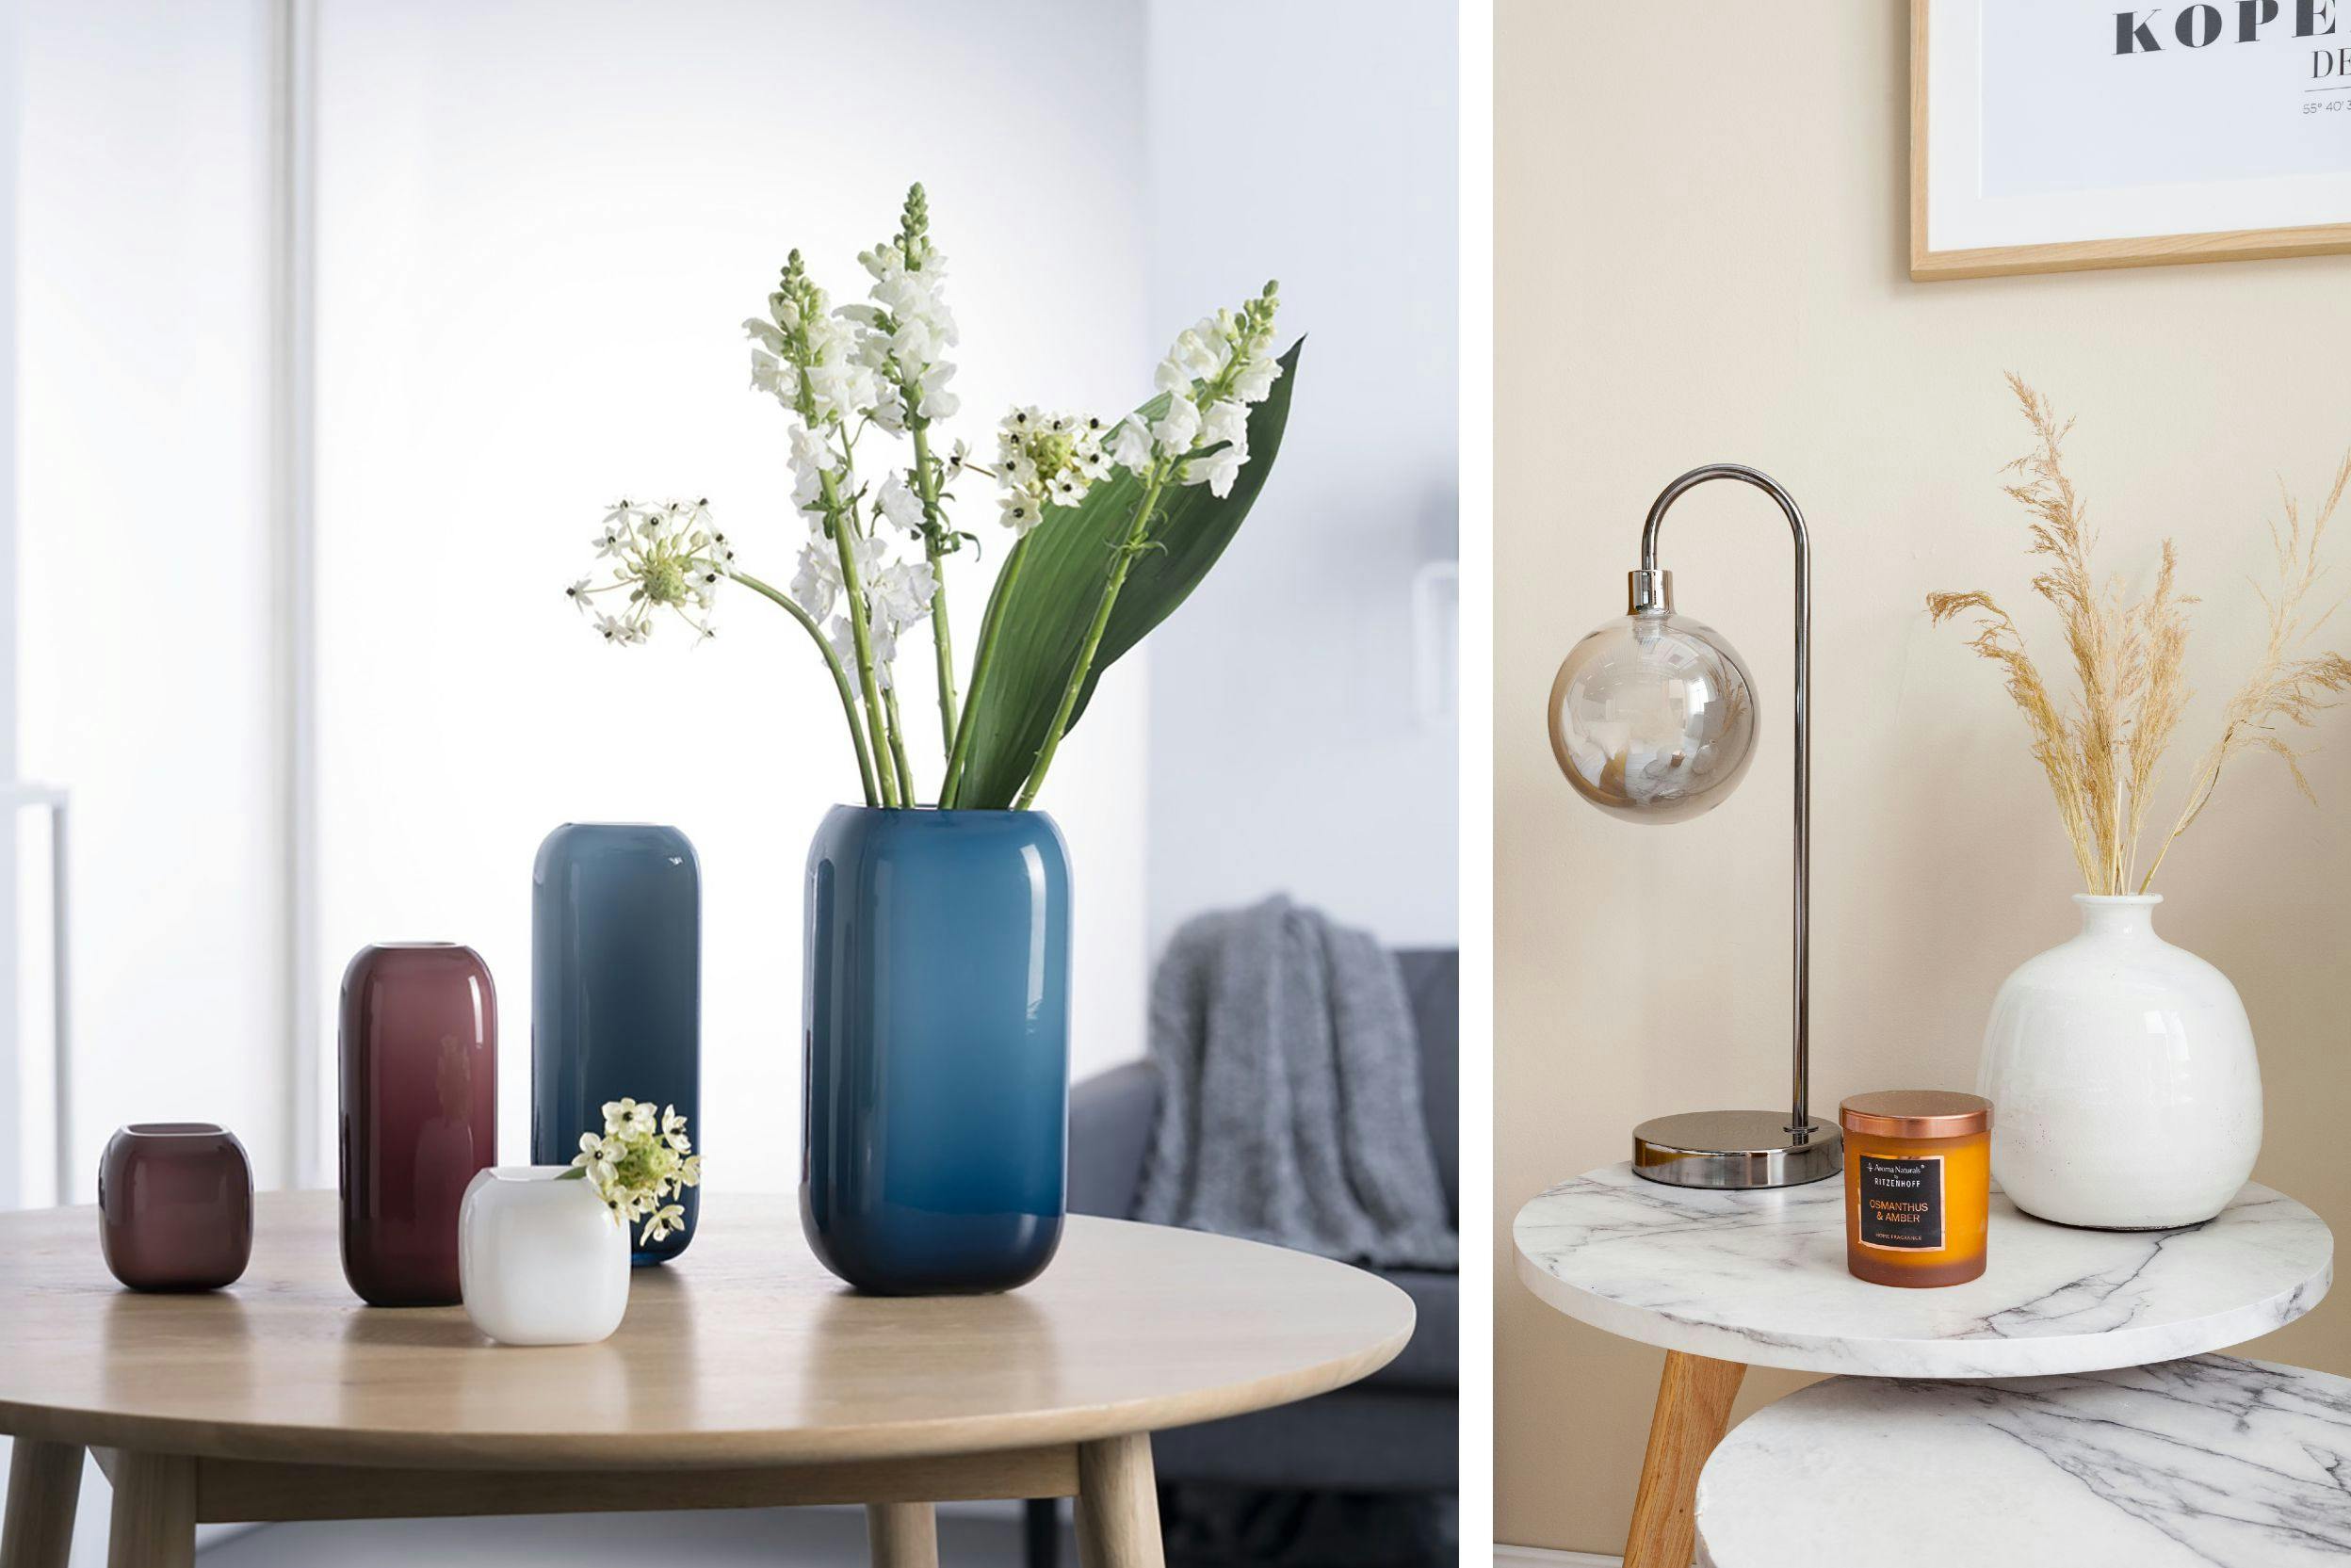 Combo de deux photos de vases sur une table, l'une avec des vases bleus de tailles différentes et des fleurs, l'autre avec un vase blanc façon boule avec une bougie et une lampe